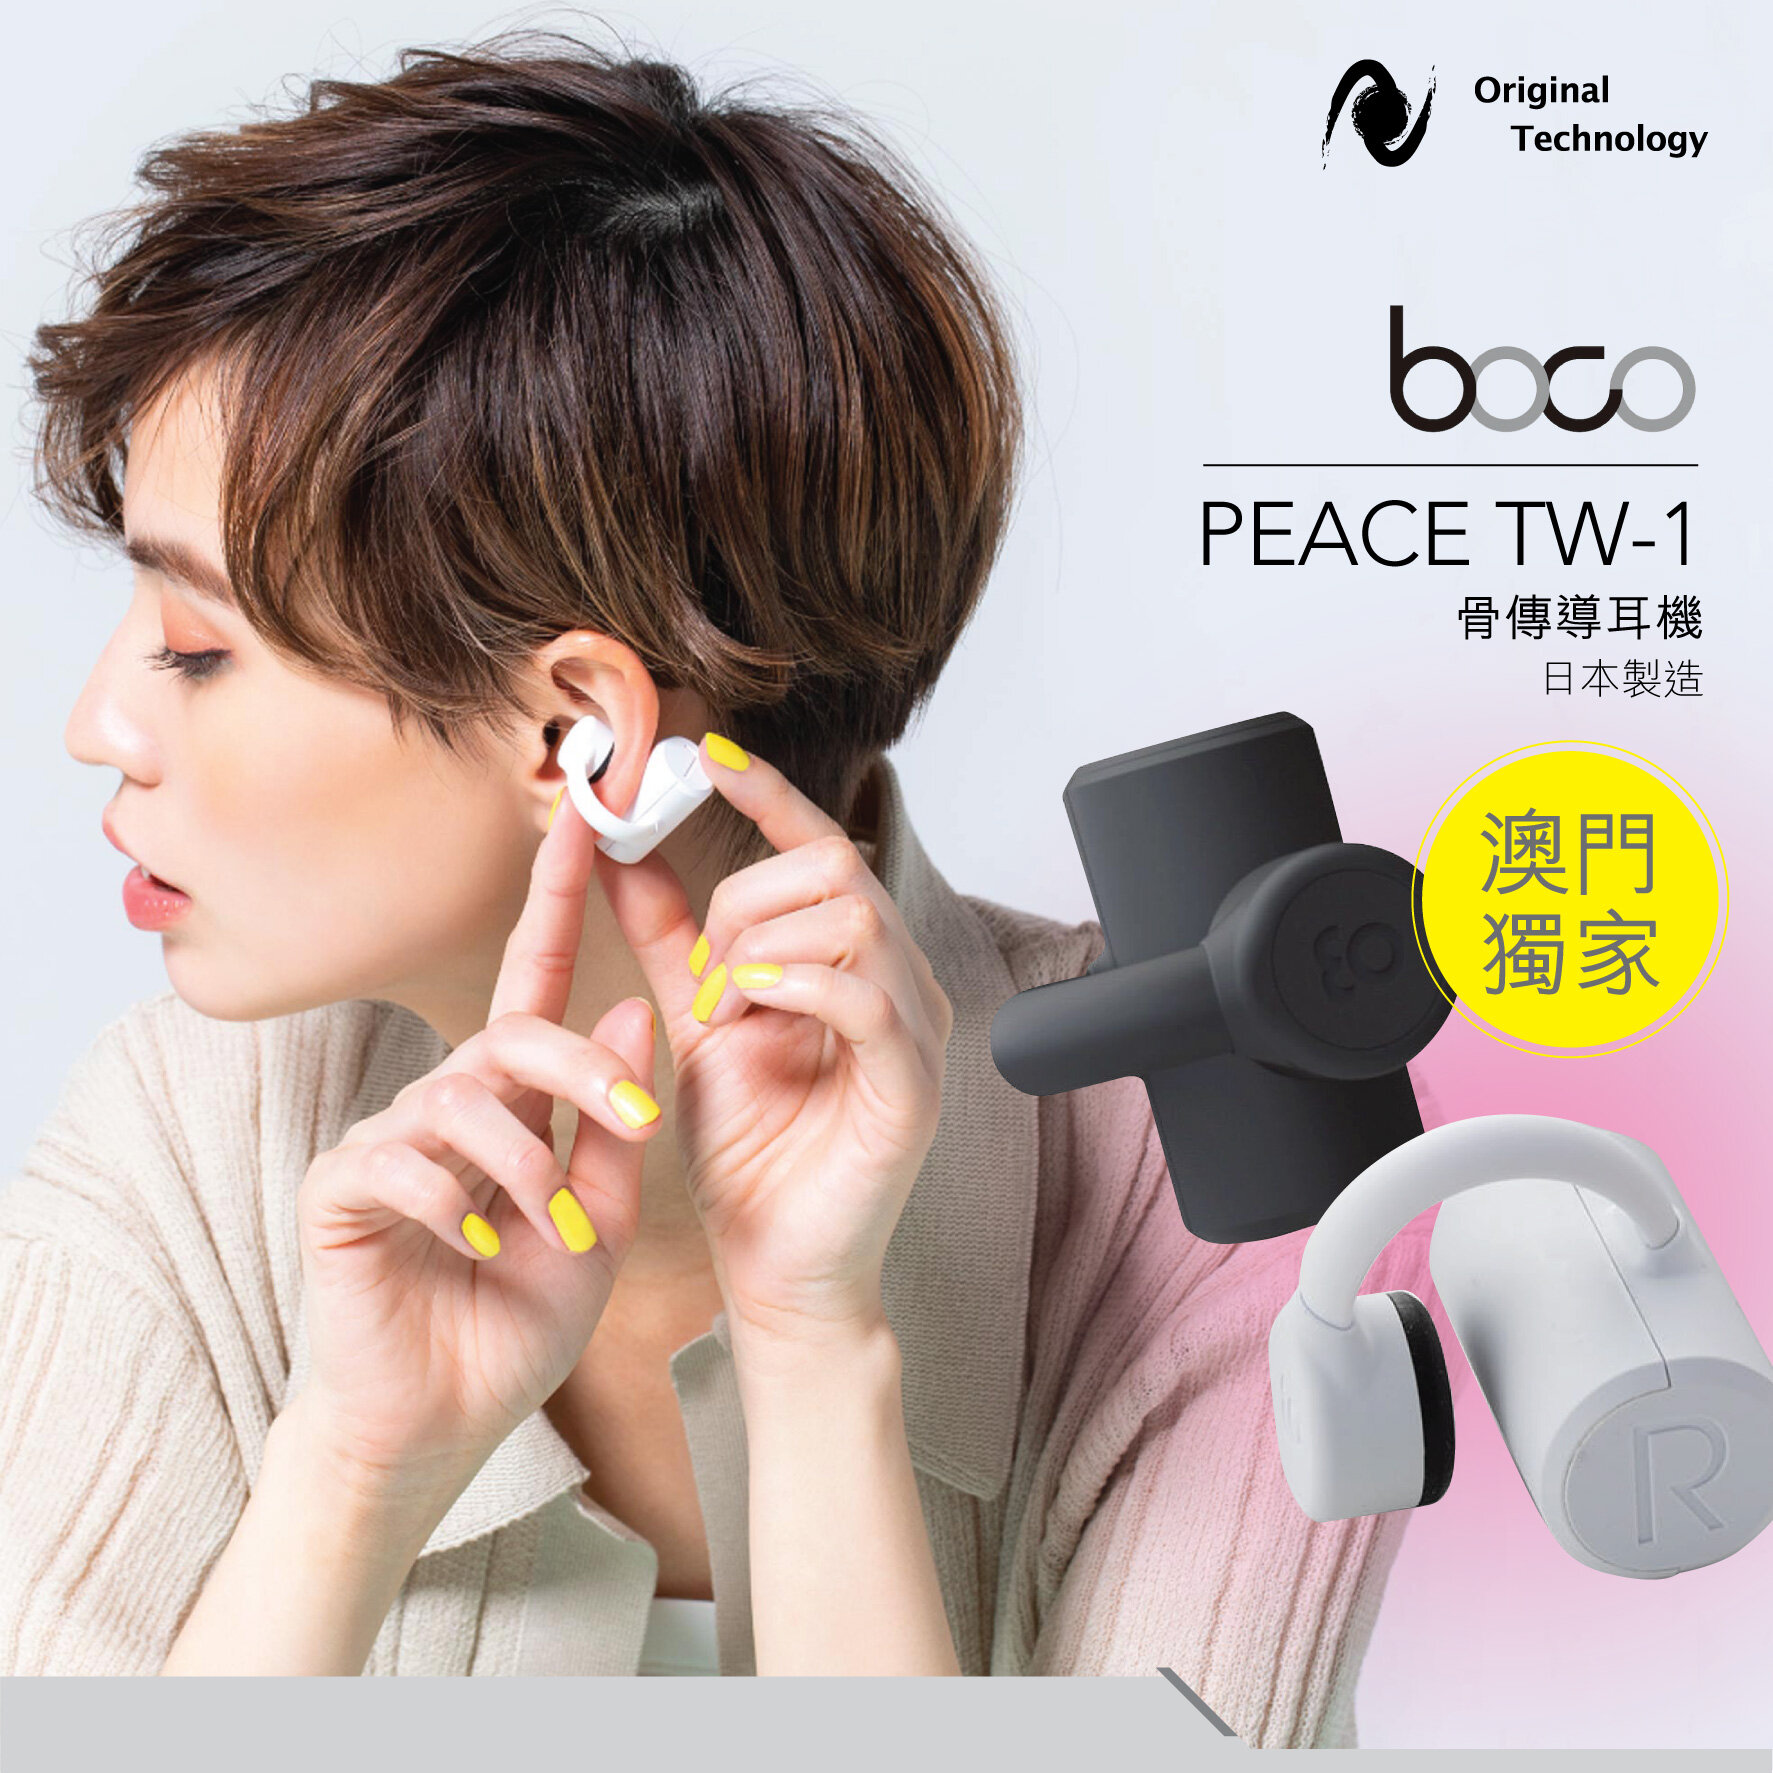 來自日本的真・無線骨傳導耳機 – Boco PEACE TW-1